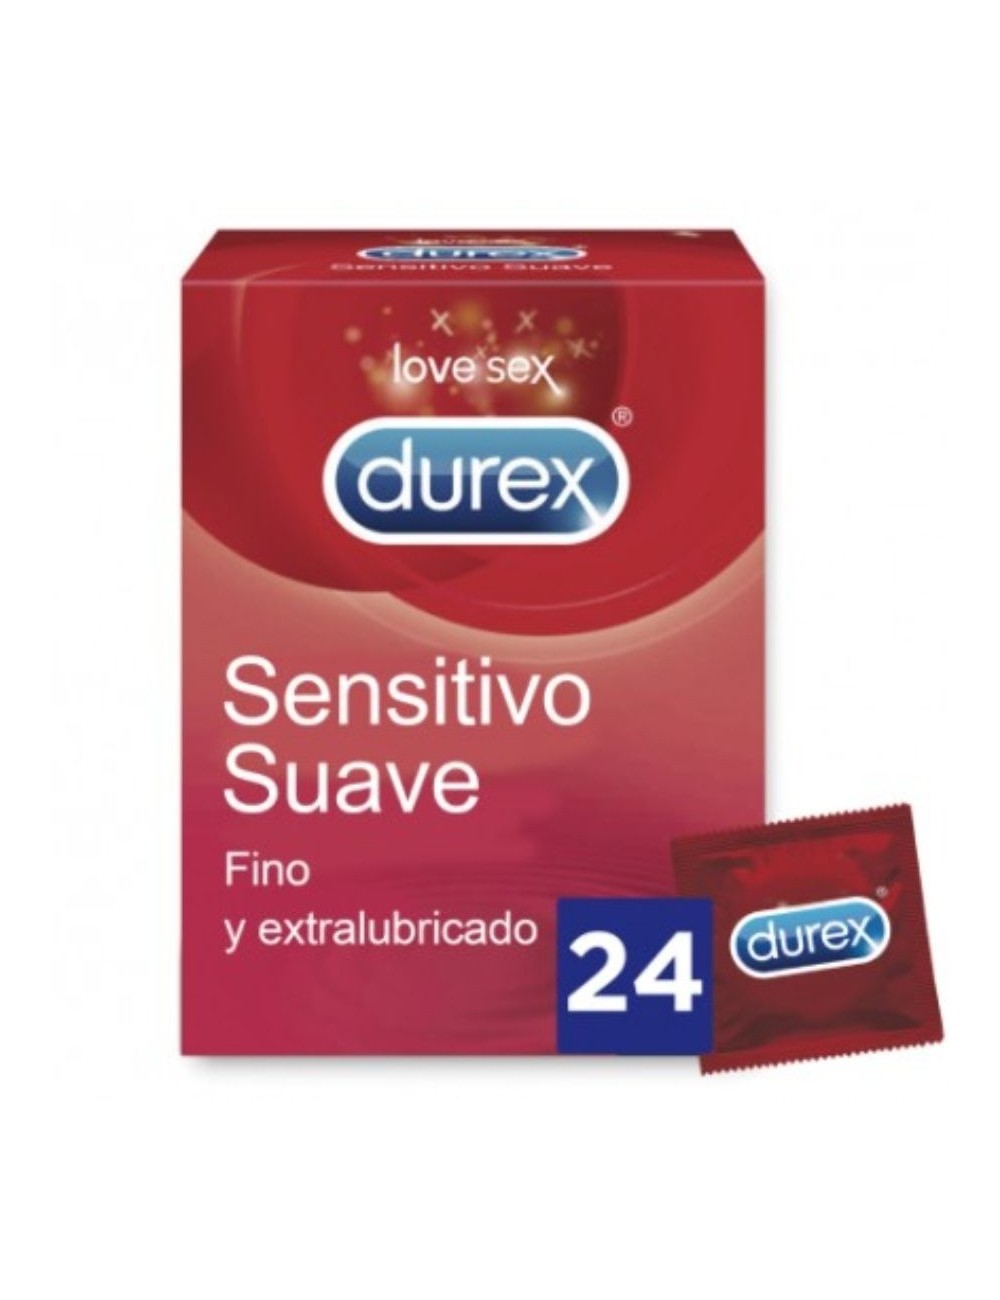 UNITES SOFT SENSITIVE DUREX 24 - Aphrodisiaques - Durex Condoms